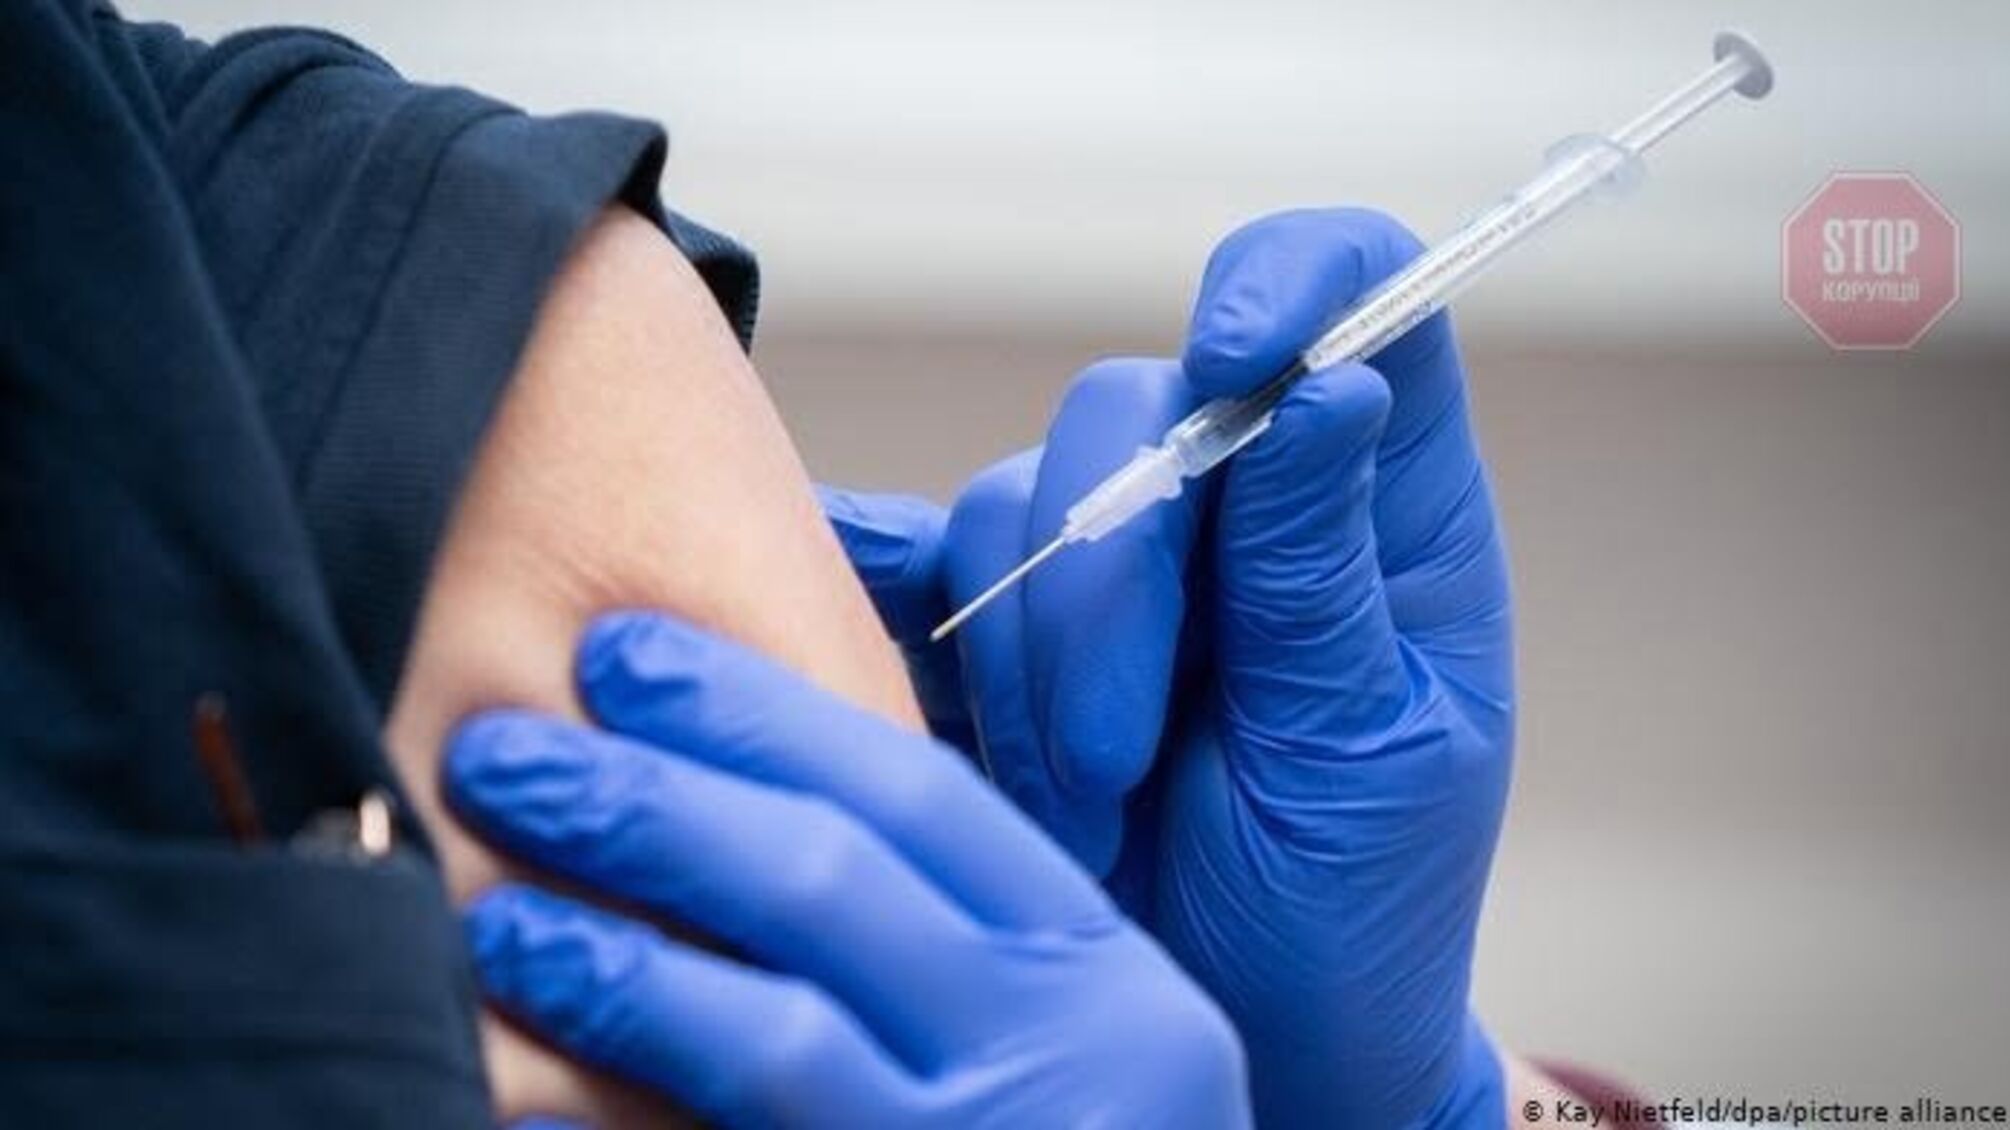 В Украине почти 400 тысяч человек получили две дозы вакцины